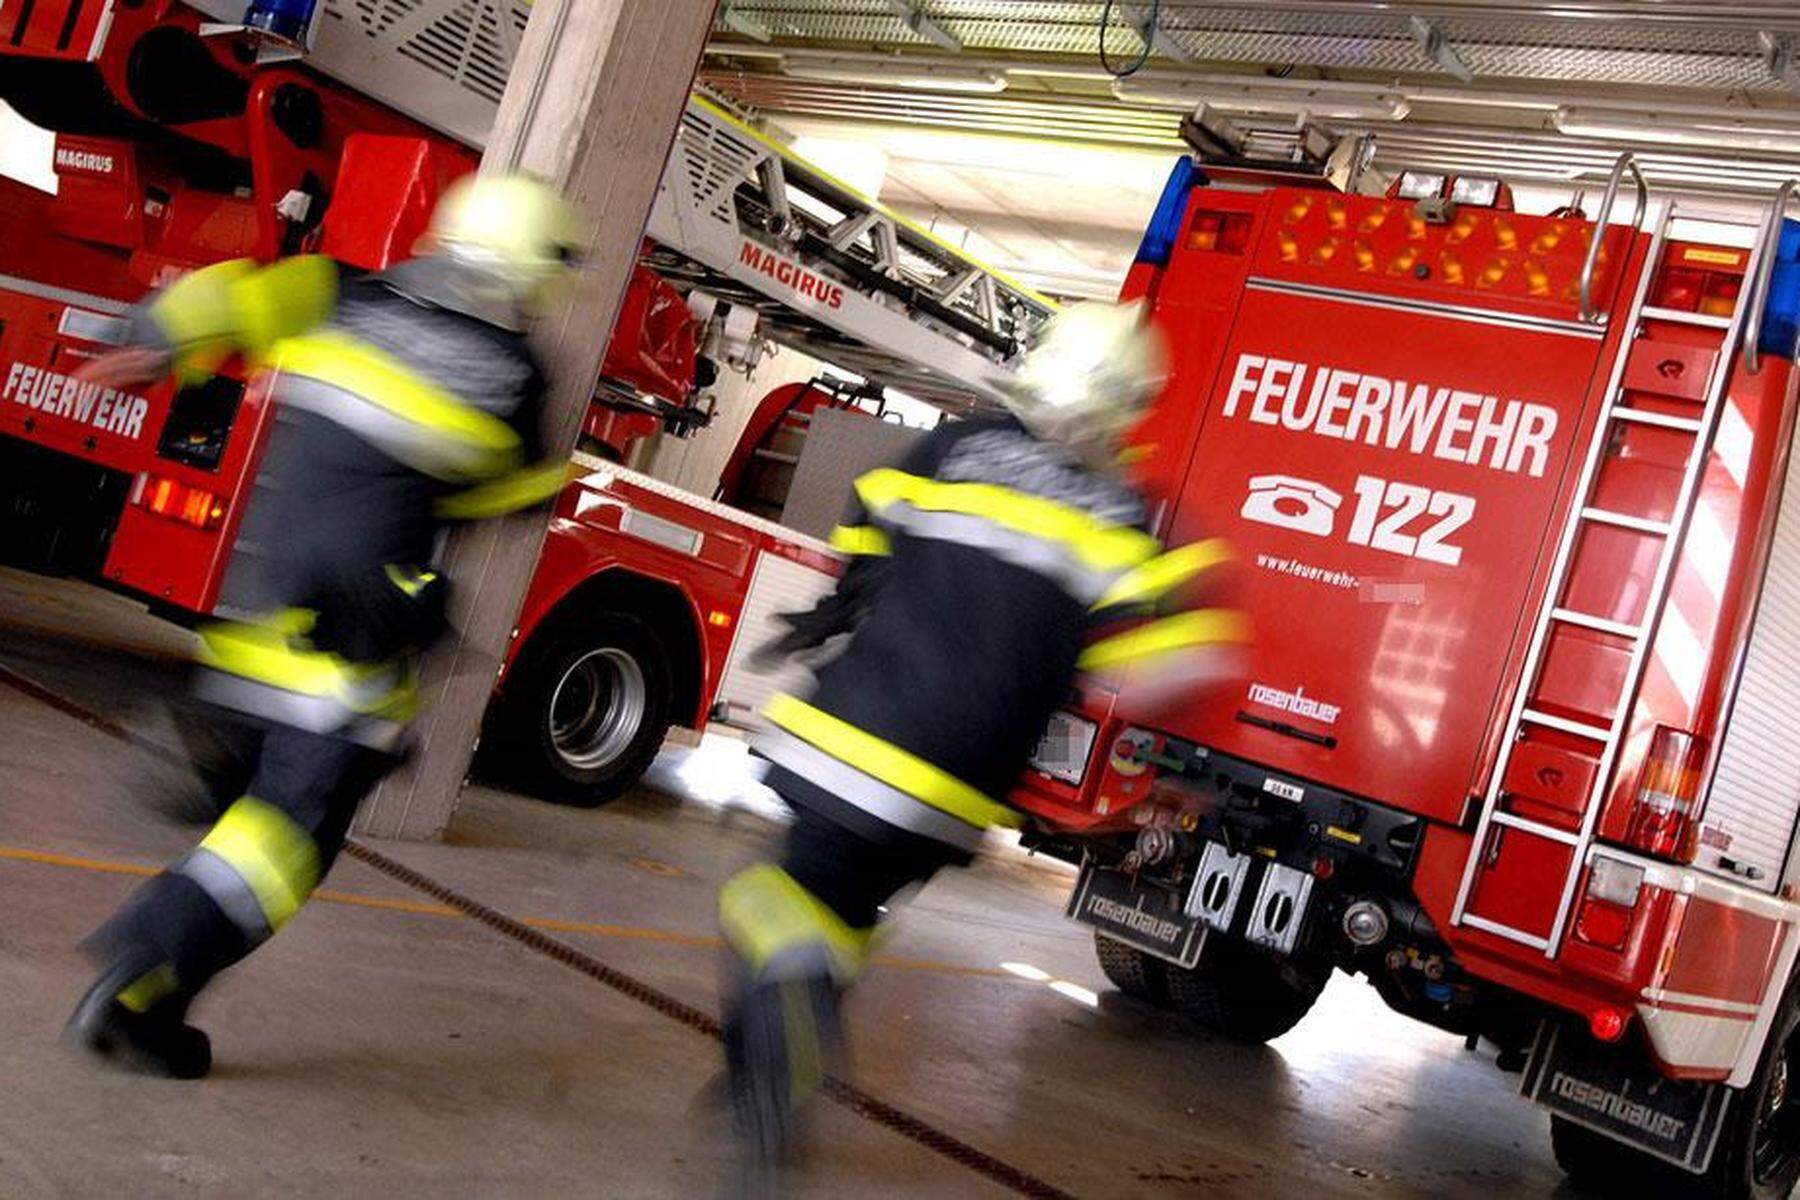 Kärnten: Akku einer Taschenlampe entzündete sich in Mehrzweckfahrzeug der Feuerwehr